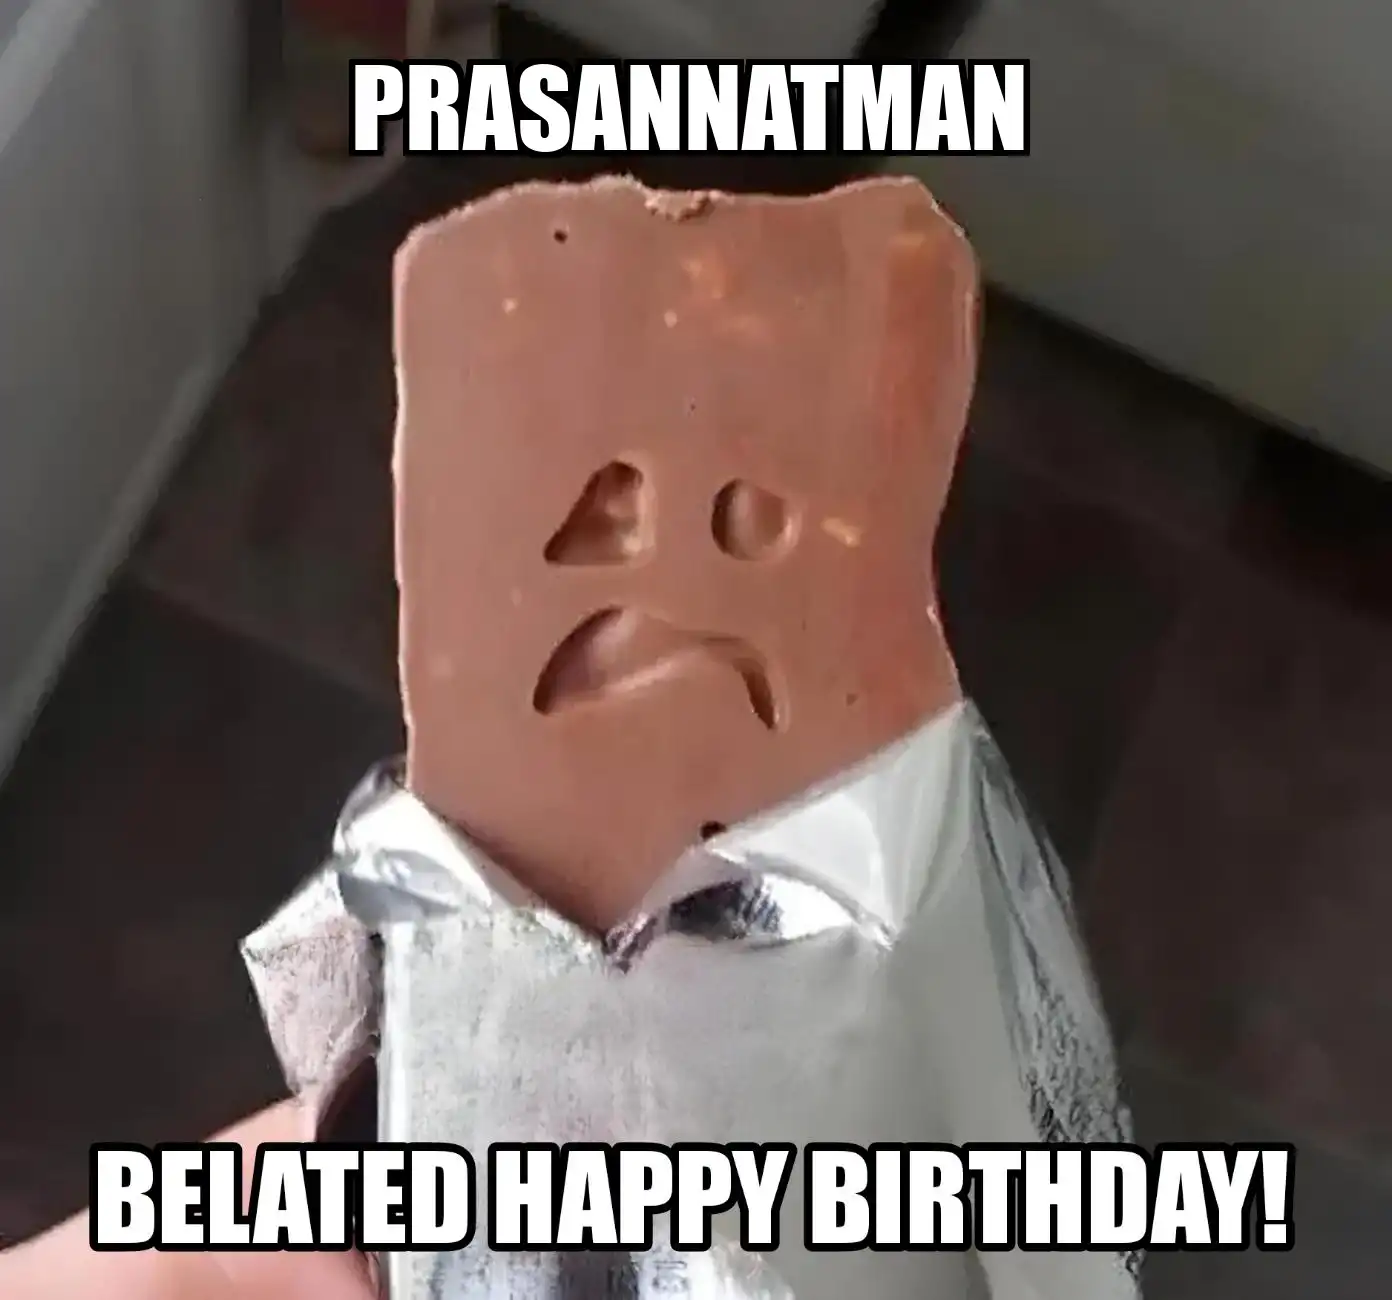 Happy Birthday Prasannatman Belated Happy Birthday Meme